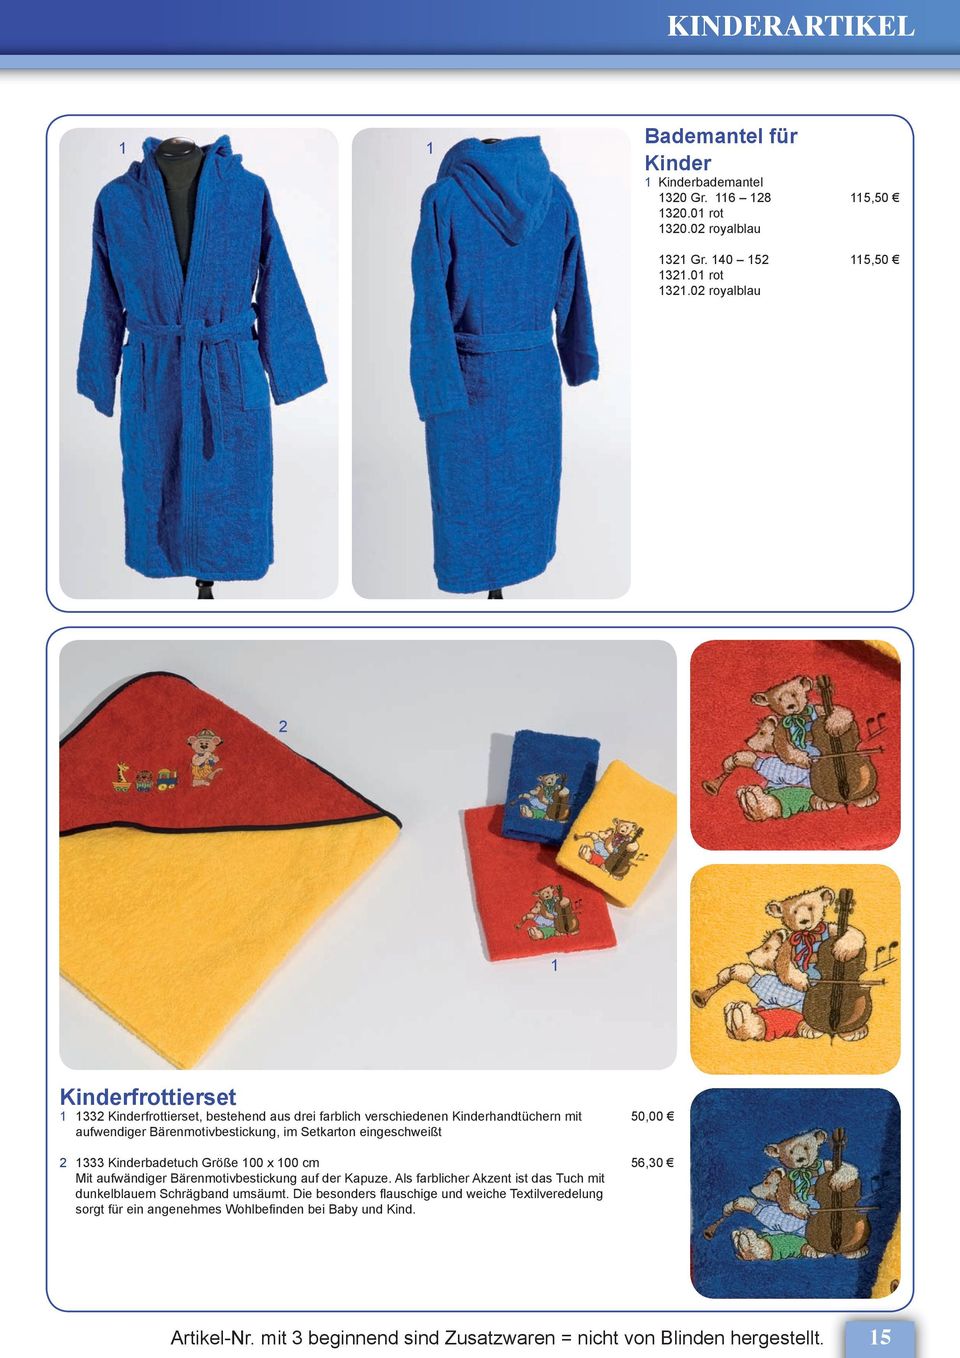 0 royalblau Kinderfrottierset Kinderfrottierset, bestehend aus drei farblich verschiedenen Kinderhandtüchern mit 0,00 aufwendiger Bärenmotivbestickung, im